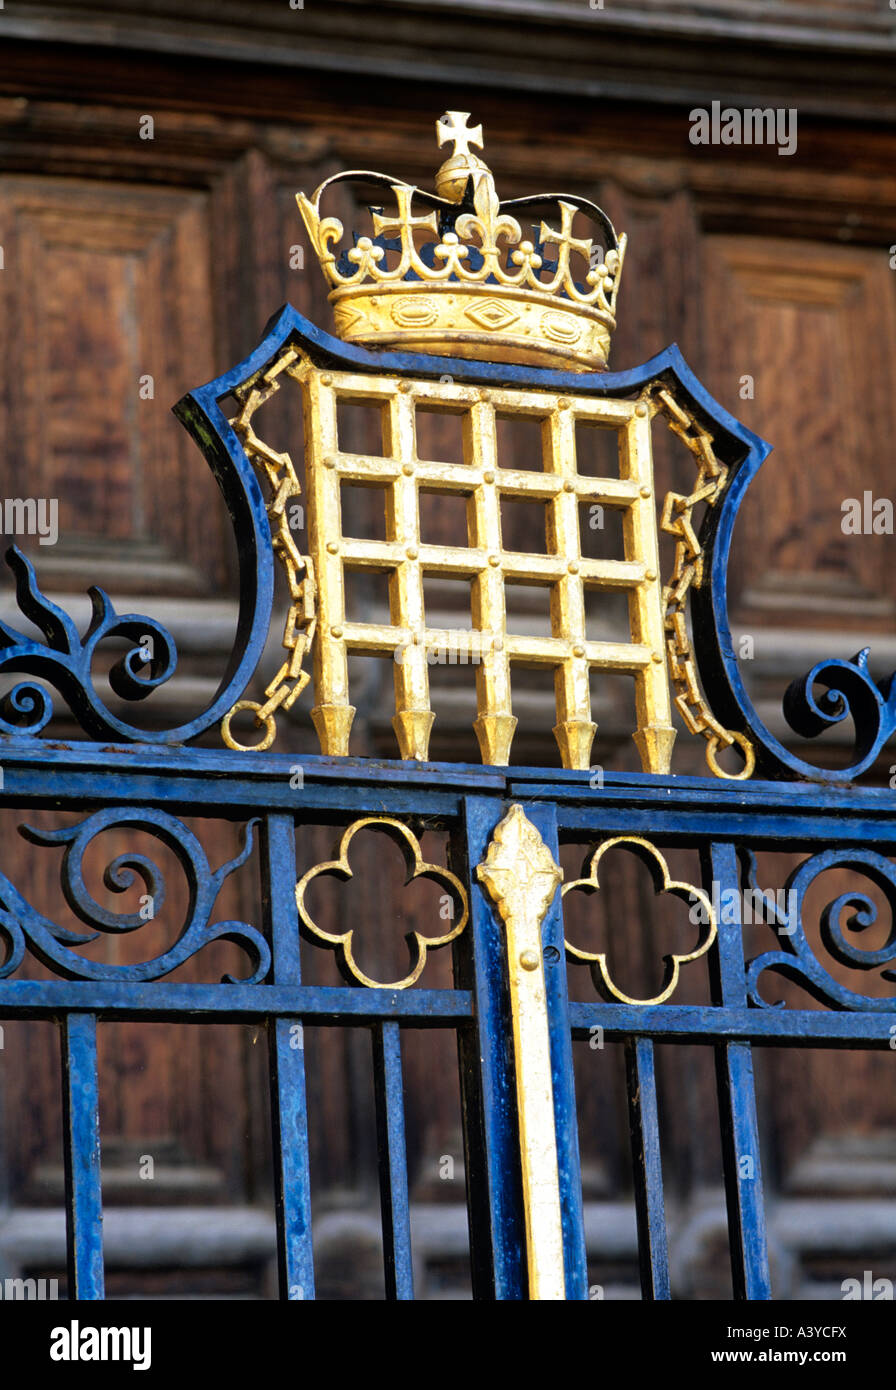 La portcullis sulle ringhiere in King's College di Cambridge, il simbolo di Enrico VII secondo la rivendicazione alla corona inglese Foto Stock